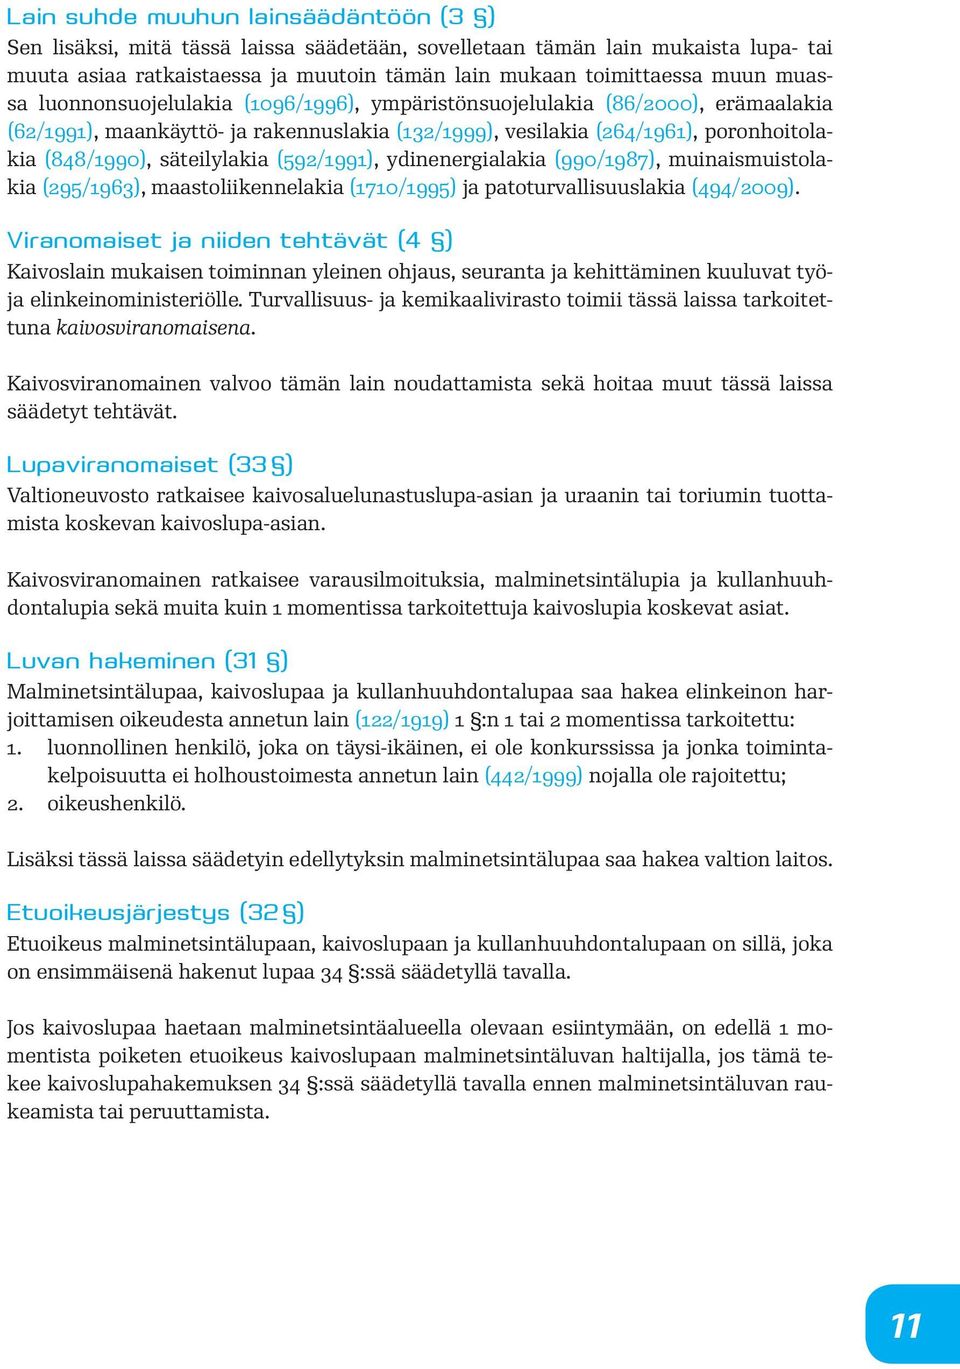 säteilylakia (592/1991), ydinenergialakia (990/1987), muinaismuistolakia (295/1963), maastoliikennelakia (1710/1995) ja patoturvallisuuslakia (494/2009).